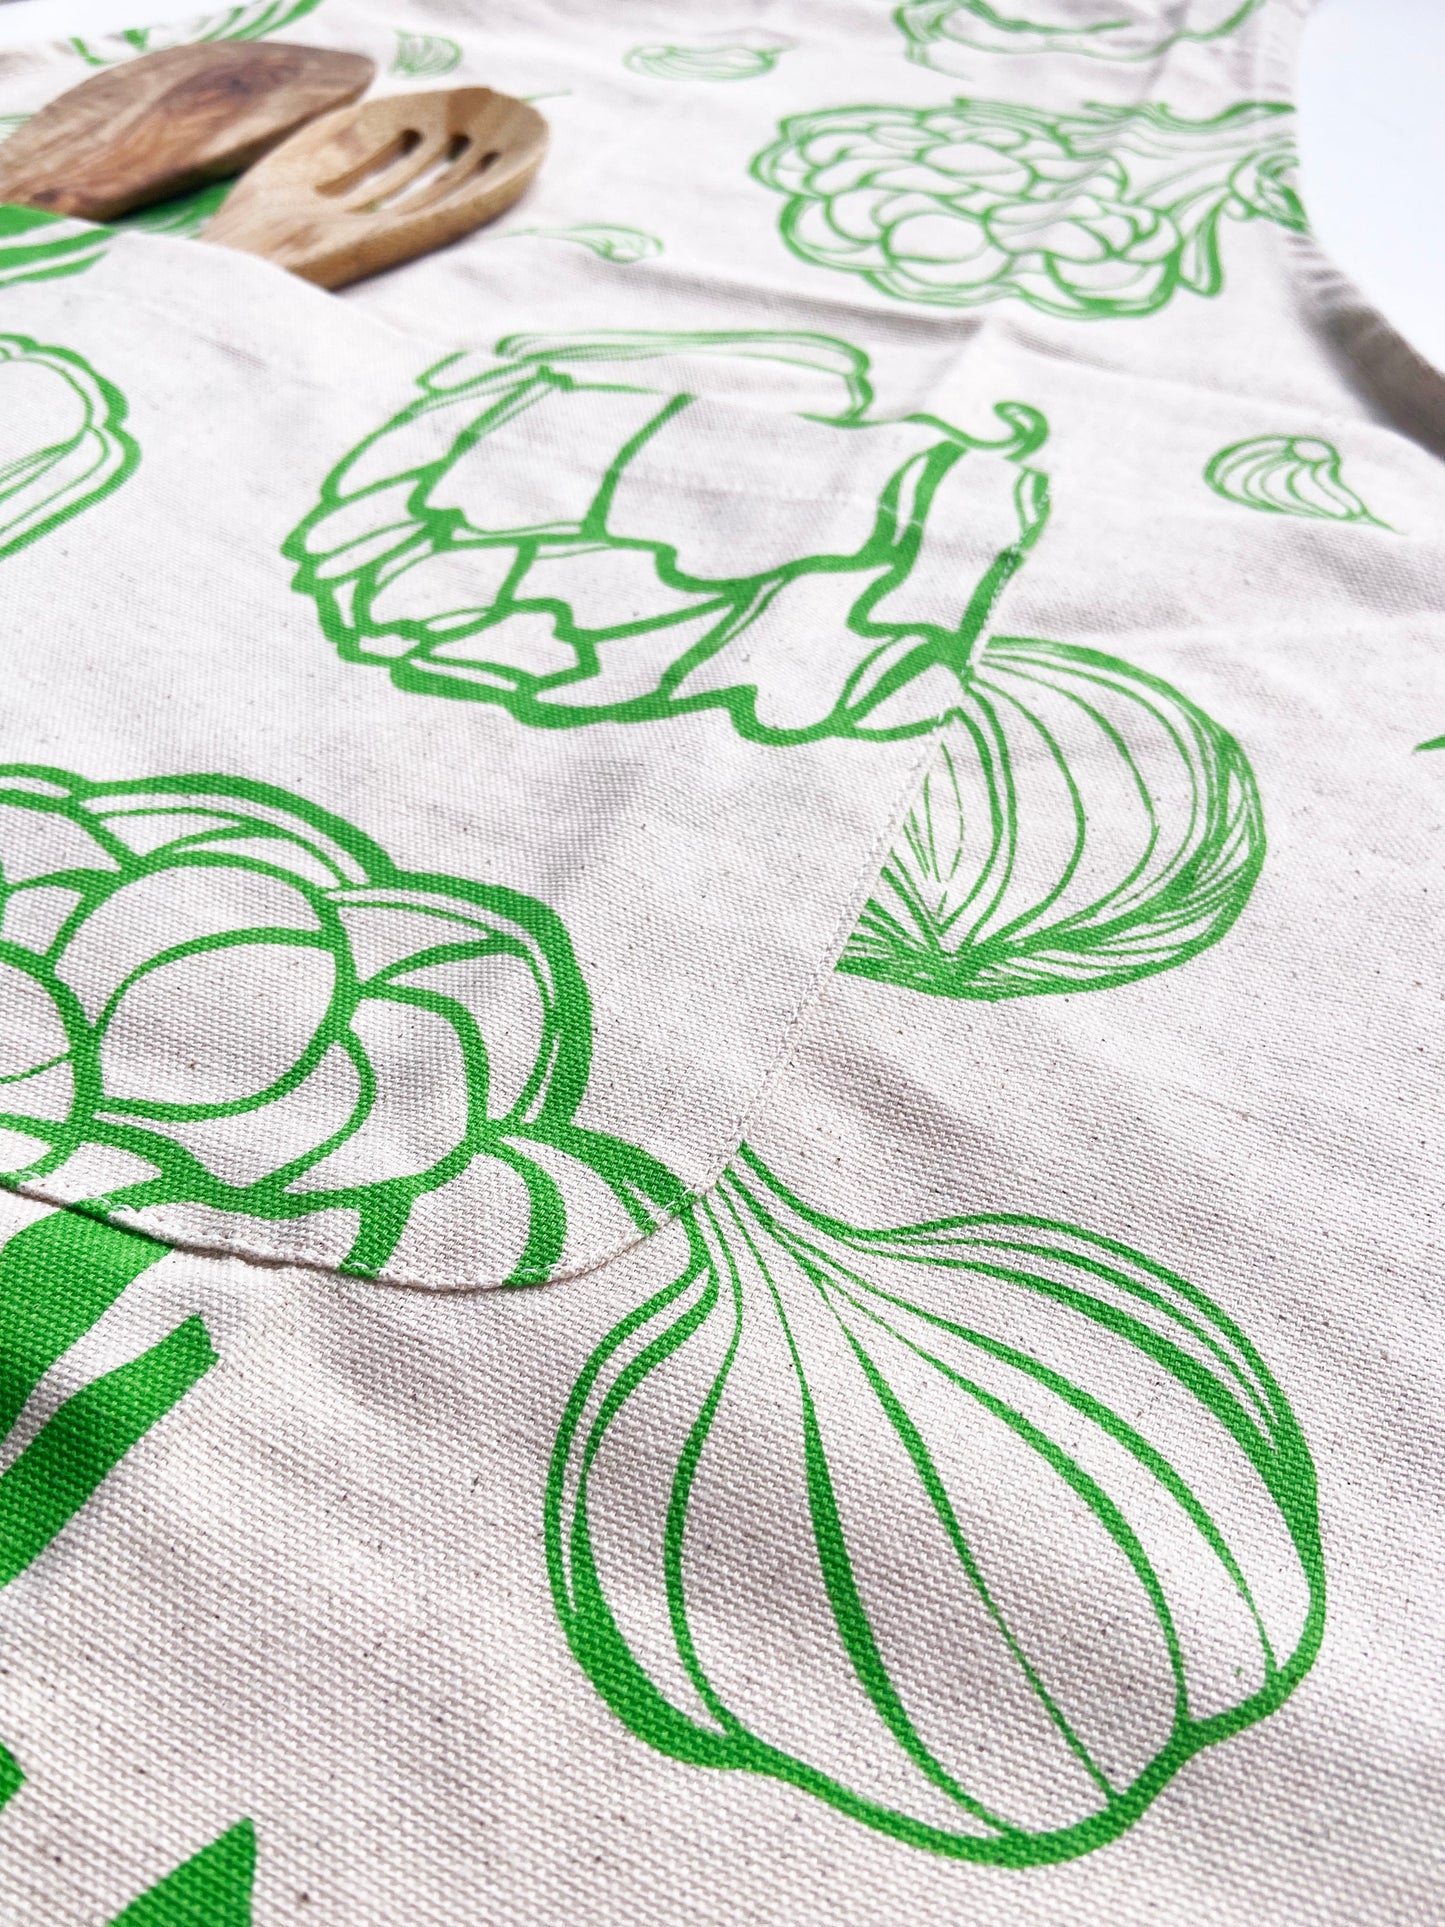 Unisex Apron - Large Veggies Pattern - Natural Cotton Canvas